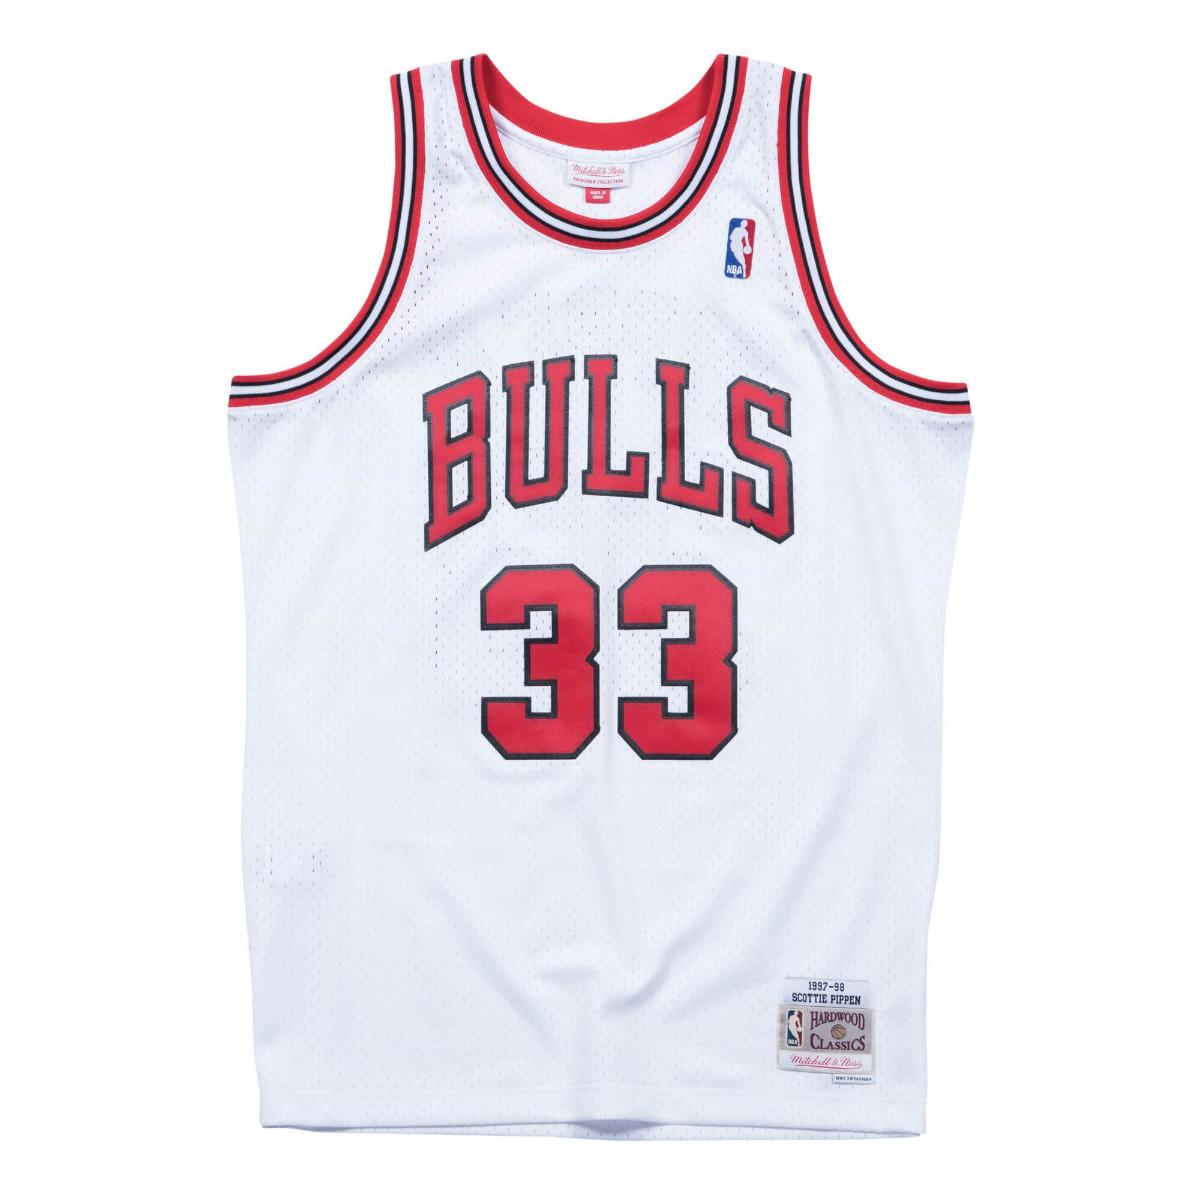 Mitchel Ness Swingman Jersey Chicago Bulls Home 1997-98 Scottie Pippen(ホワイト)(ミッチェルアンドネス NBA ホーム スイングマンジャージ シカゴ ブルズ スコッティ ピッペン)【メンズ】【バスケットボールウェア ユニフォーム レプリカウェア】【23FW】